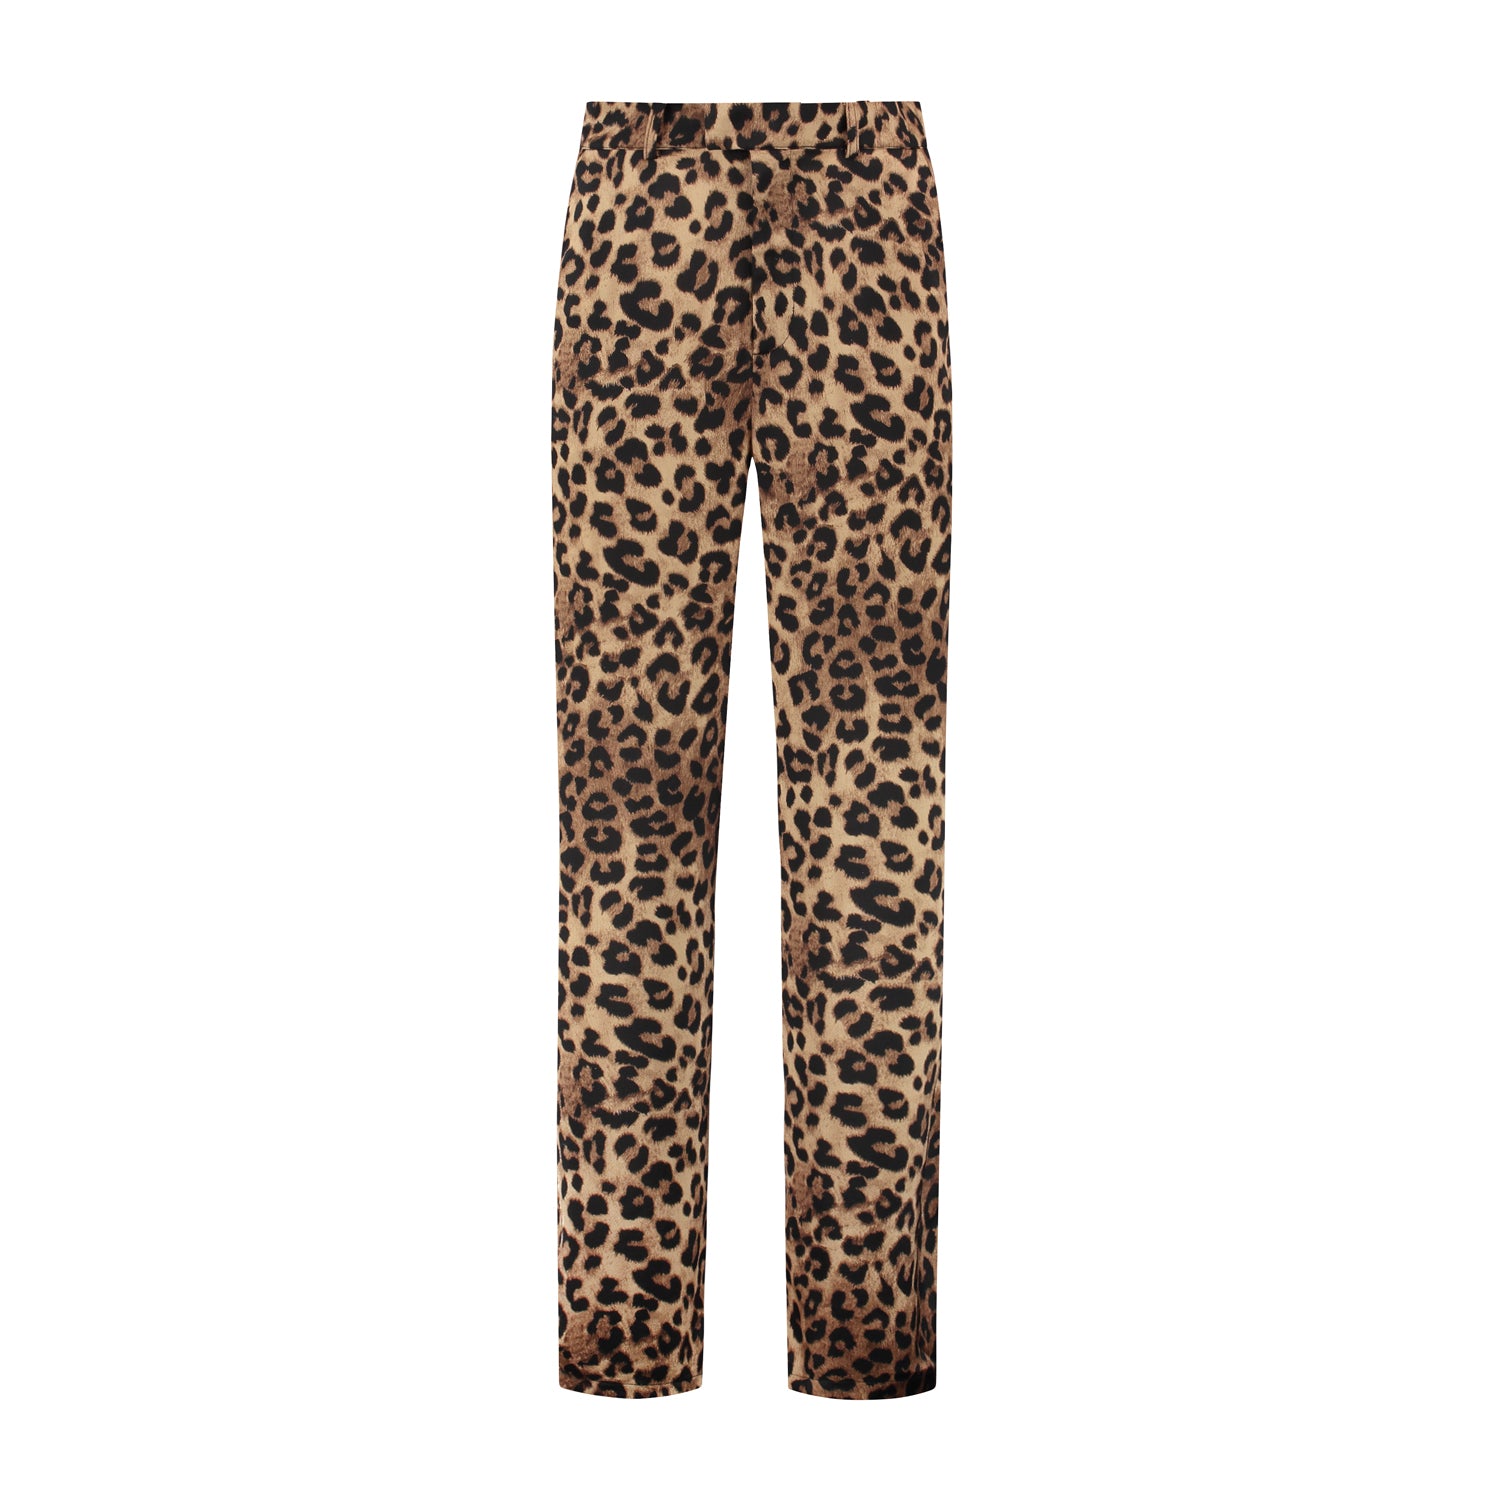 Austin leopard pants